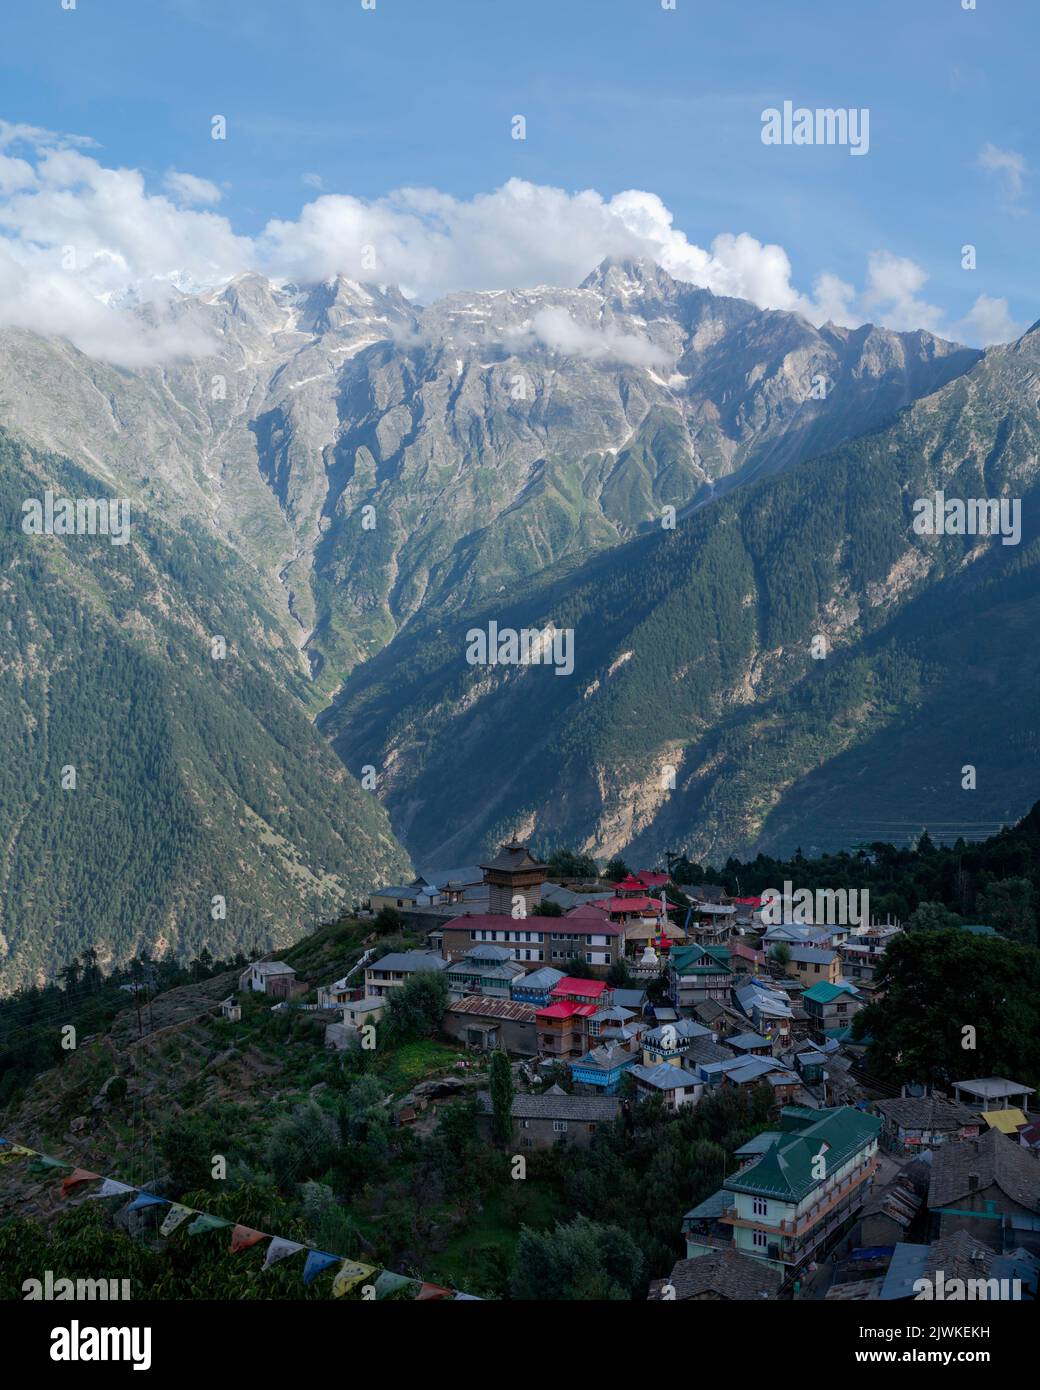 Vista elevada de la aldea Kalpa y los Himalayas con crestas agudas como telón de fondo en una buena mañana en verano en Kalpa, Himachal Pradesh, India. Foto de stock